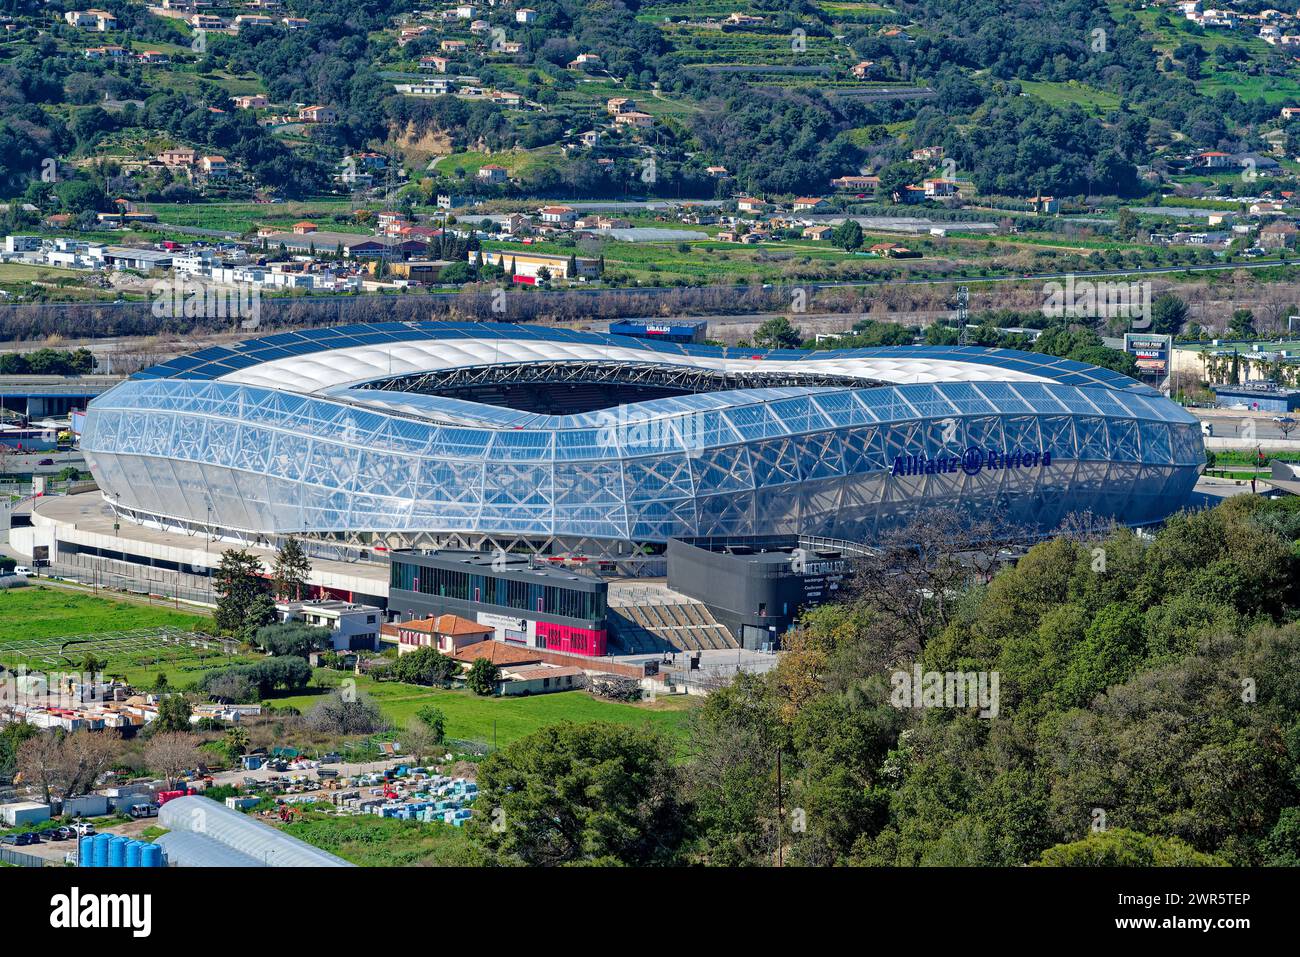 Multifunktionsarena Allianz Rivera in Nizza im Departement Var (Südostfrankreich). Nizza ist Austragungsort der Olympischen Fußballwettbewerbe 2024 Stockfoto